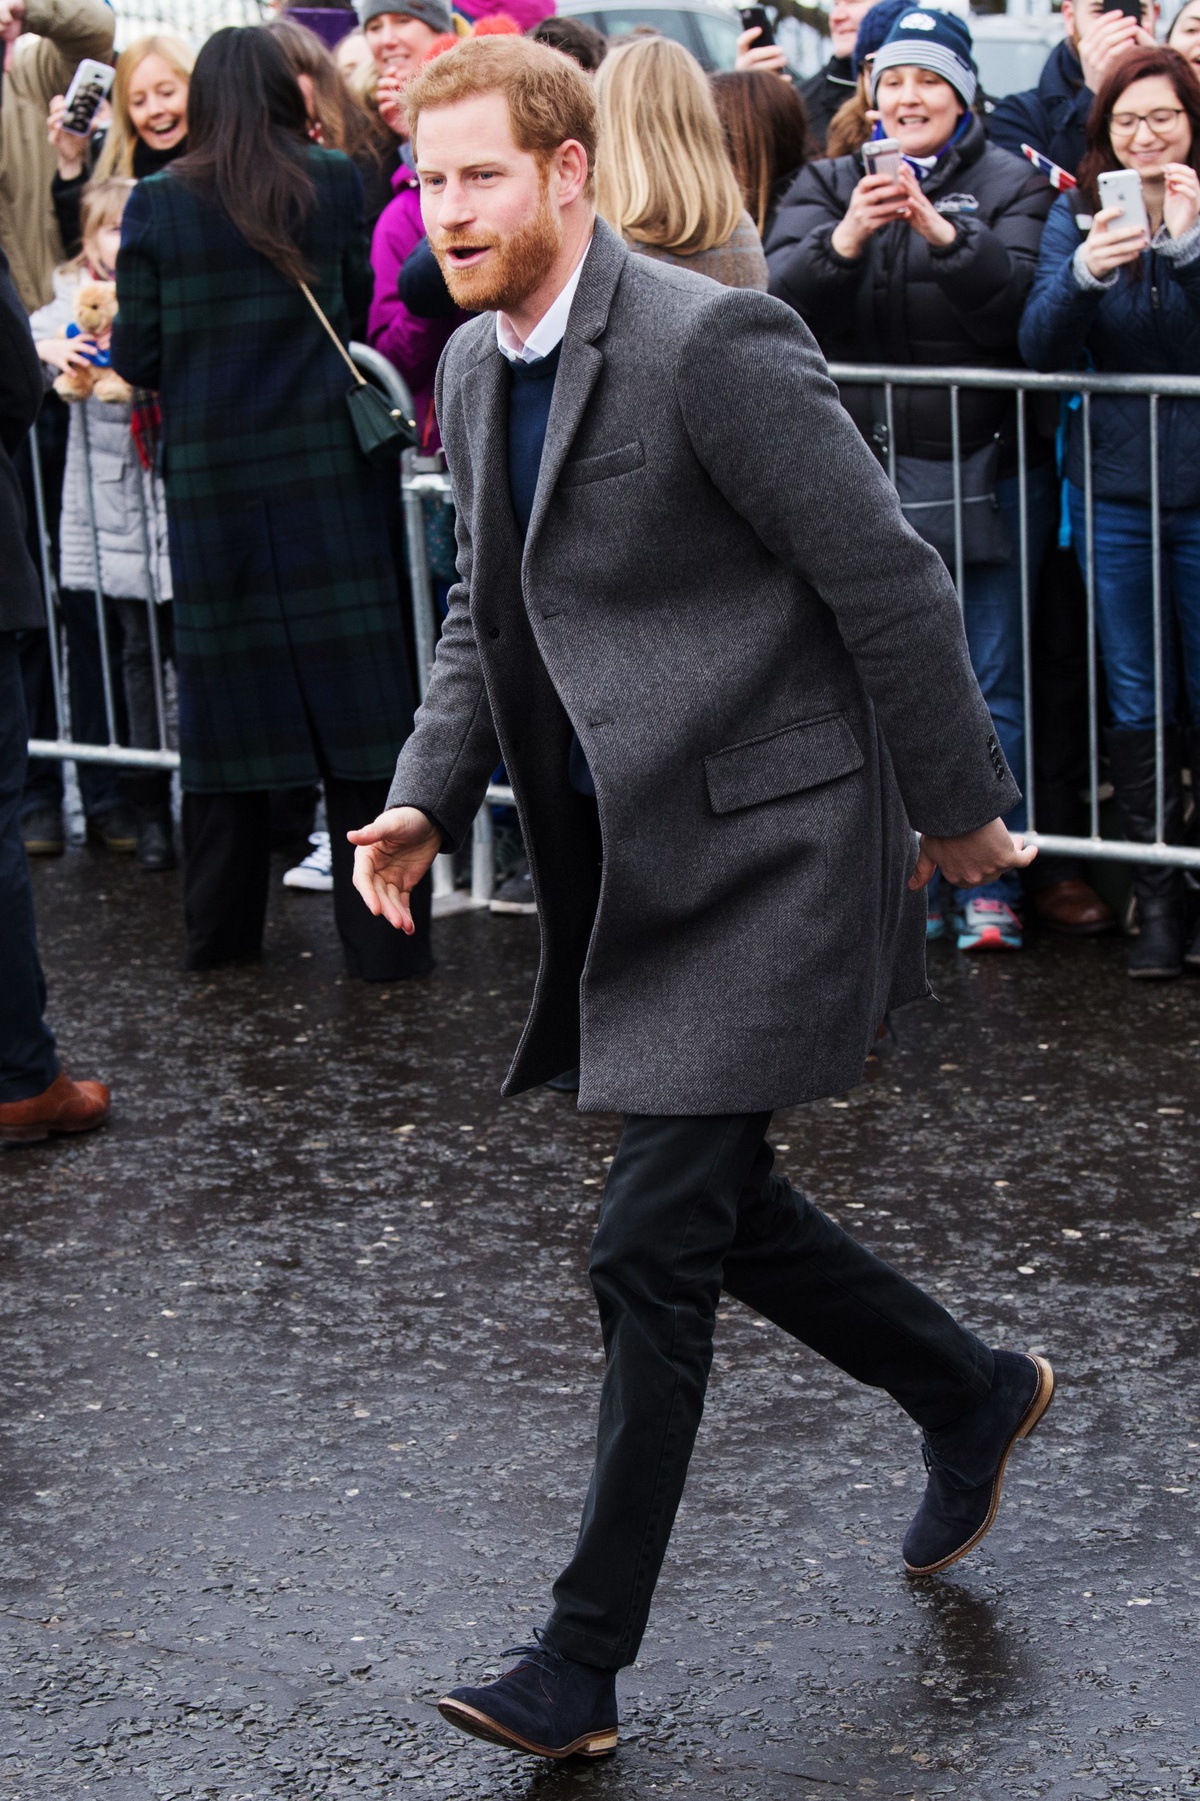 Vào mùa đông, hoàng tử Harry cũng linh hoạt thay đổi áo vest thành áo khoác dạ dáng dài để giữ ấm cơ thể. Lúc này hoàng tử lựa chọn kiểu áo dạ dáng dài và sơ mi cho lớp lót bên trong.